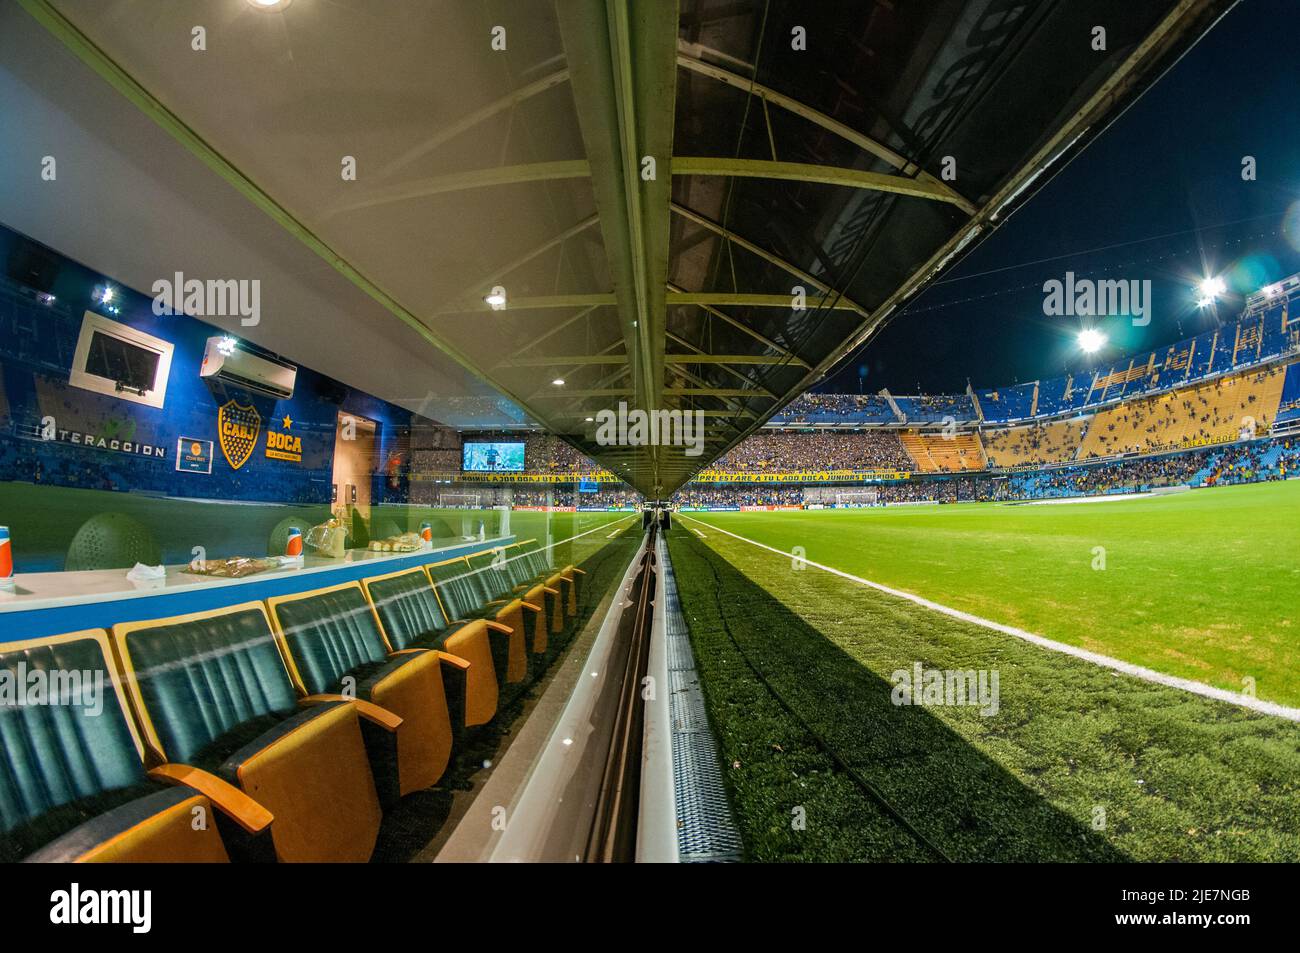 Boca Juniors facility, La Bombonera Stadium before a Copa Libertadores match. Stock Photo